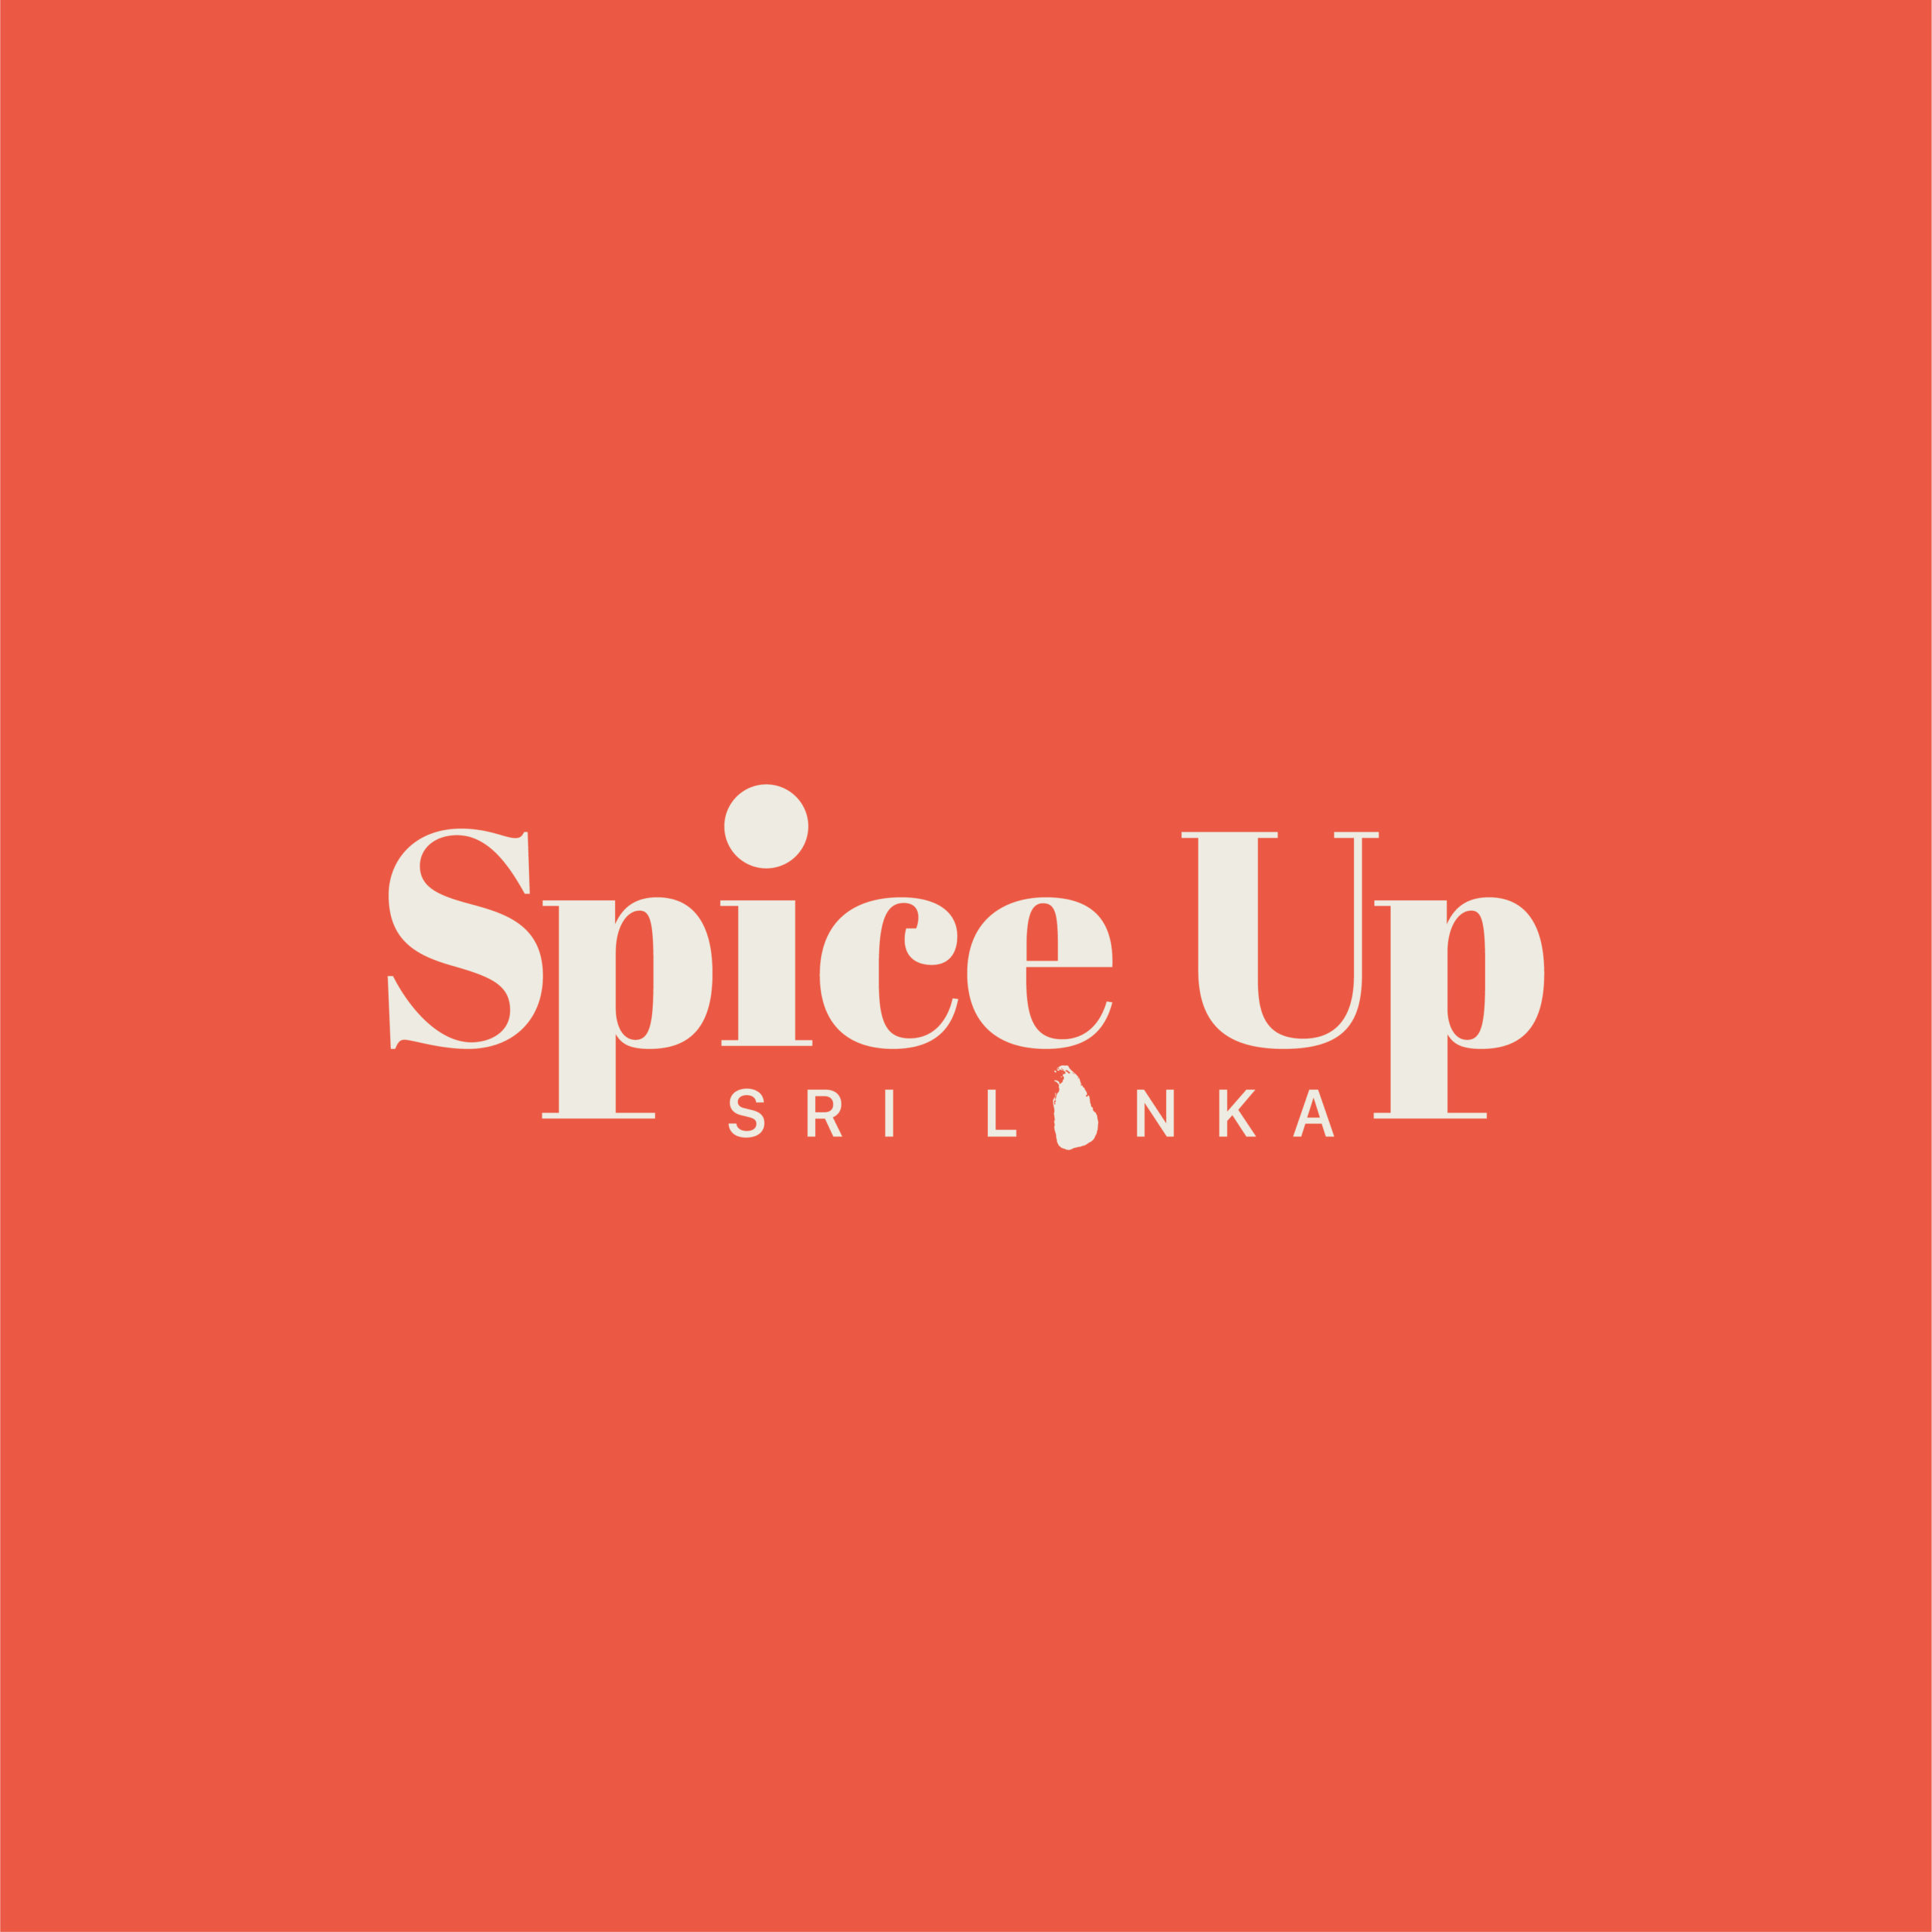 Spice Up Lanka Corporation (PVT) LTD